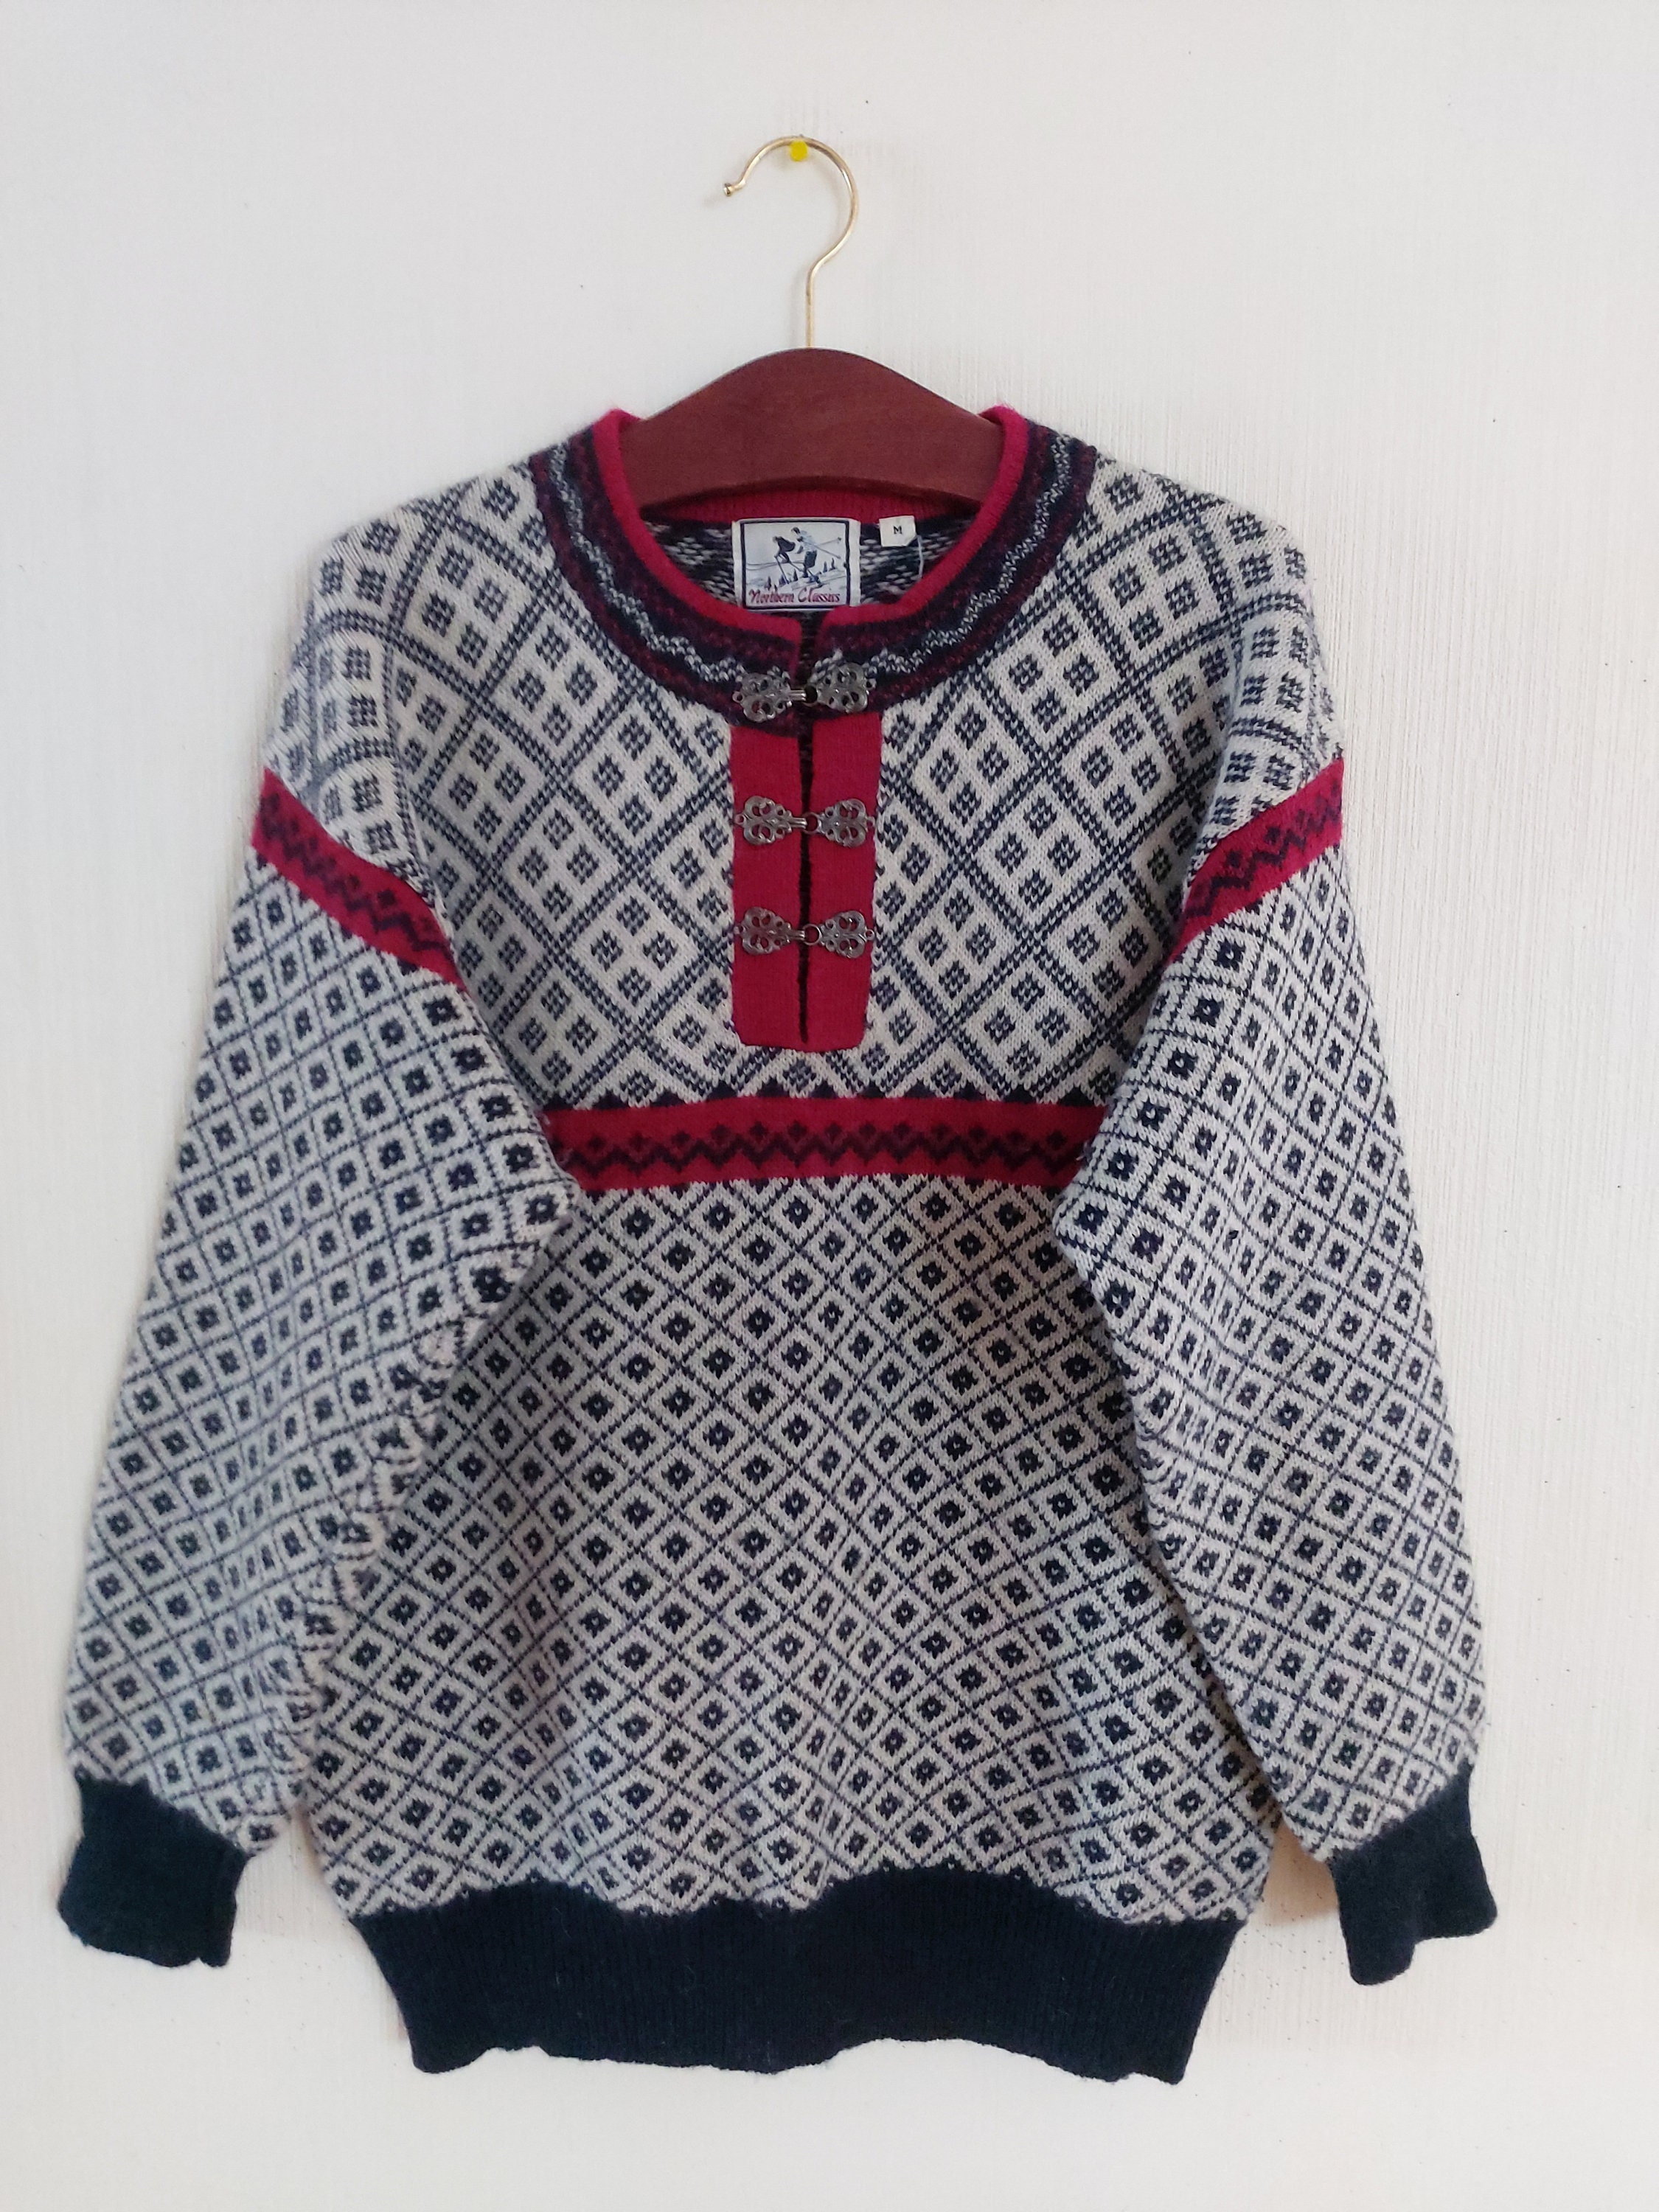 Vintage Unisex Knitted Sweater Medium Size Etsy